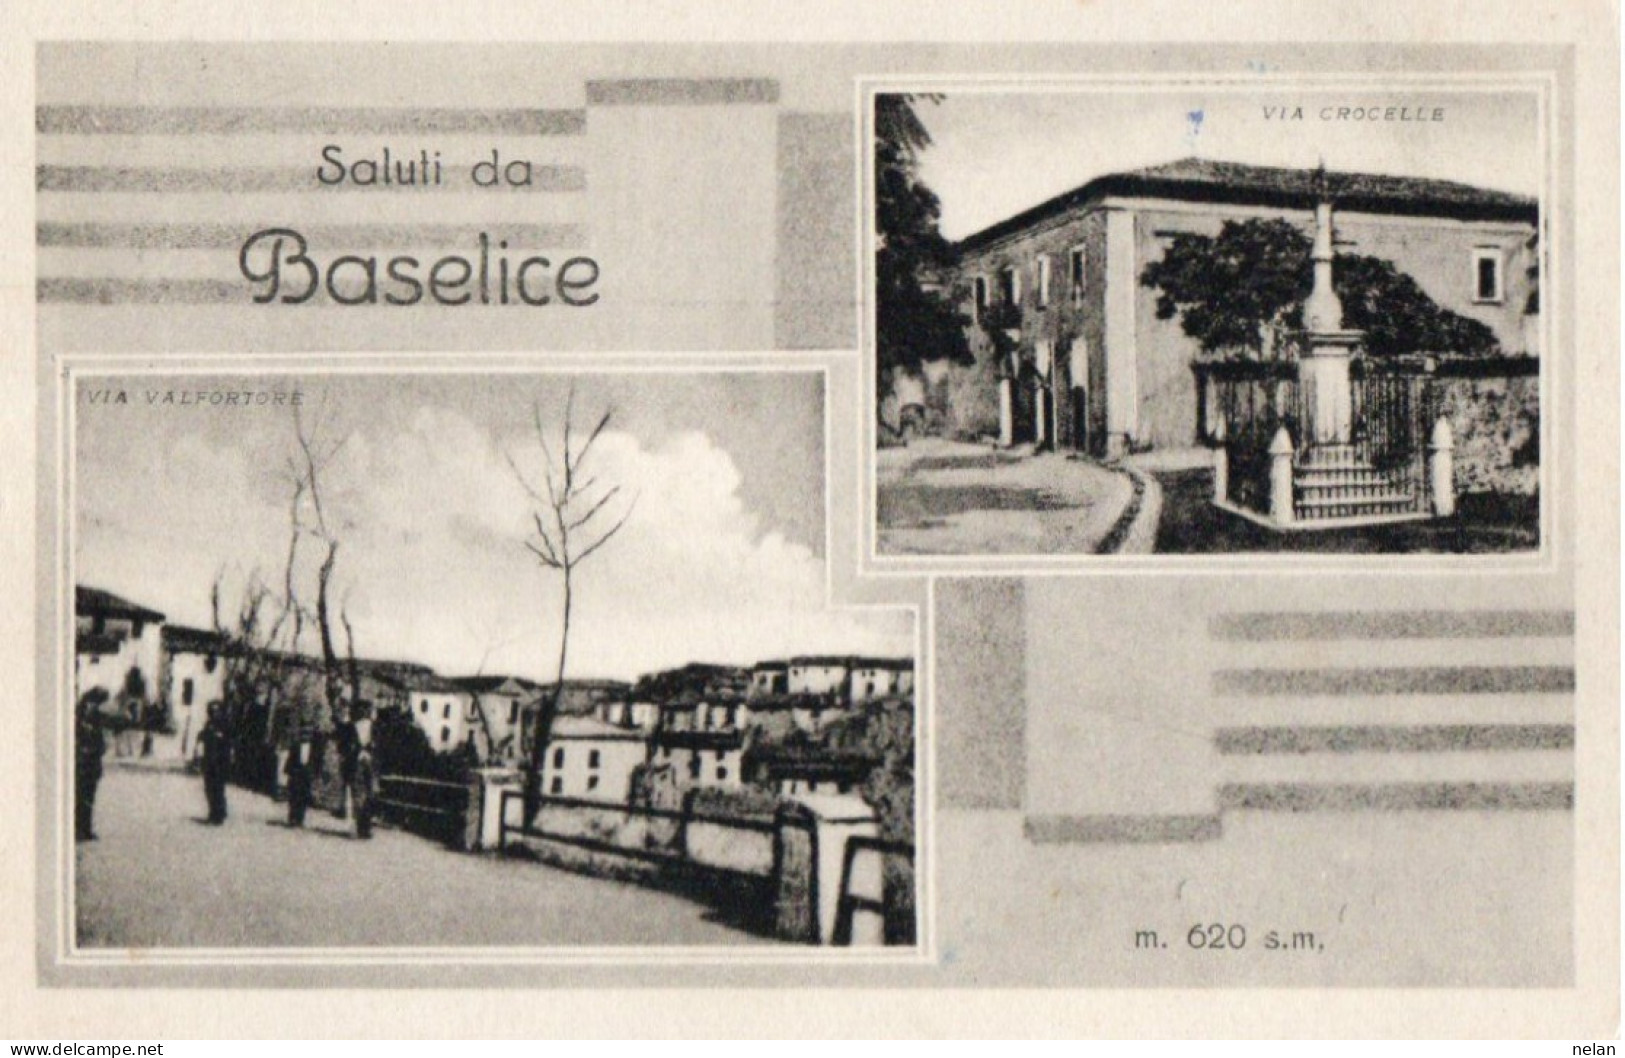 SALUTI DA BASELICE - F.P. - STORIA POSTALE - Benevento